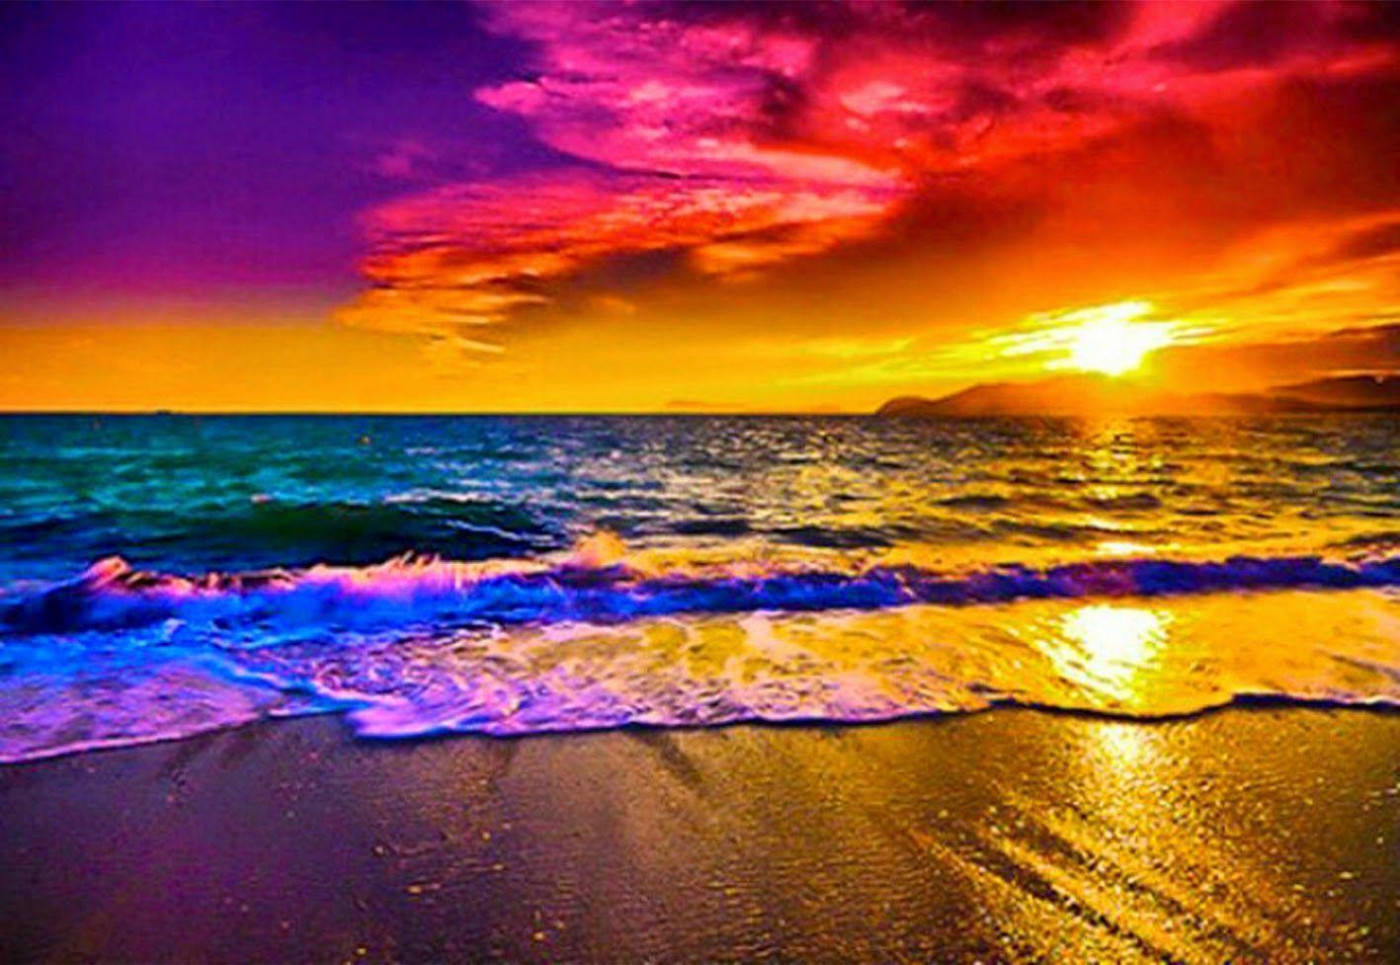 Sunset Ocean 1400 X 965 Wallpaper